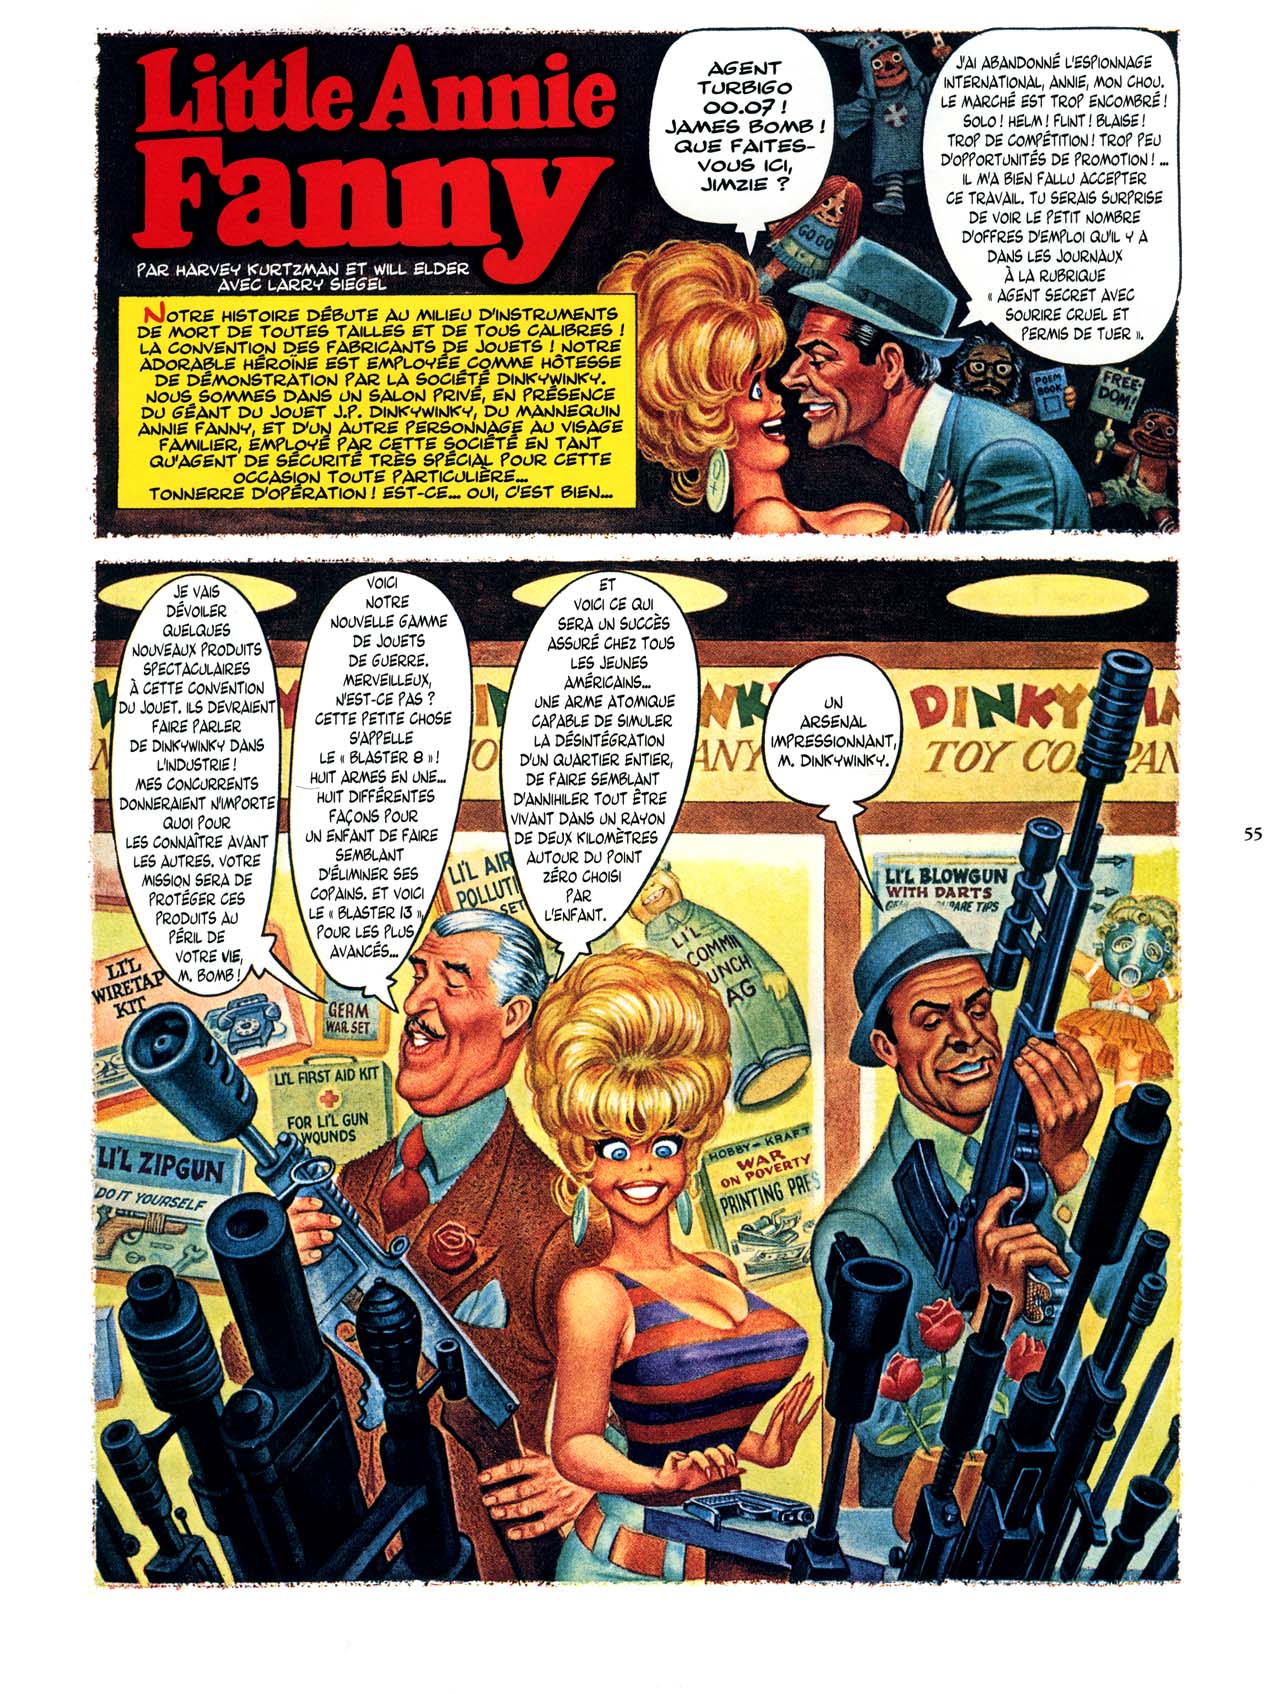 Playboys Little Annie Fanny Vol. 2 - 1965-1970 numero d'image 55